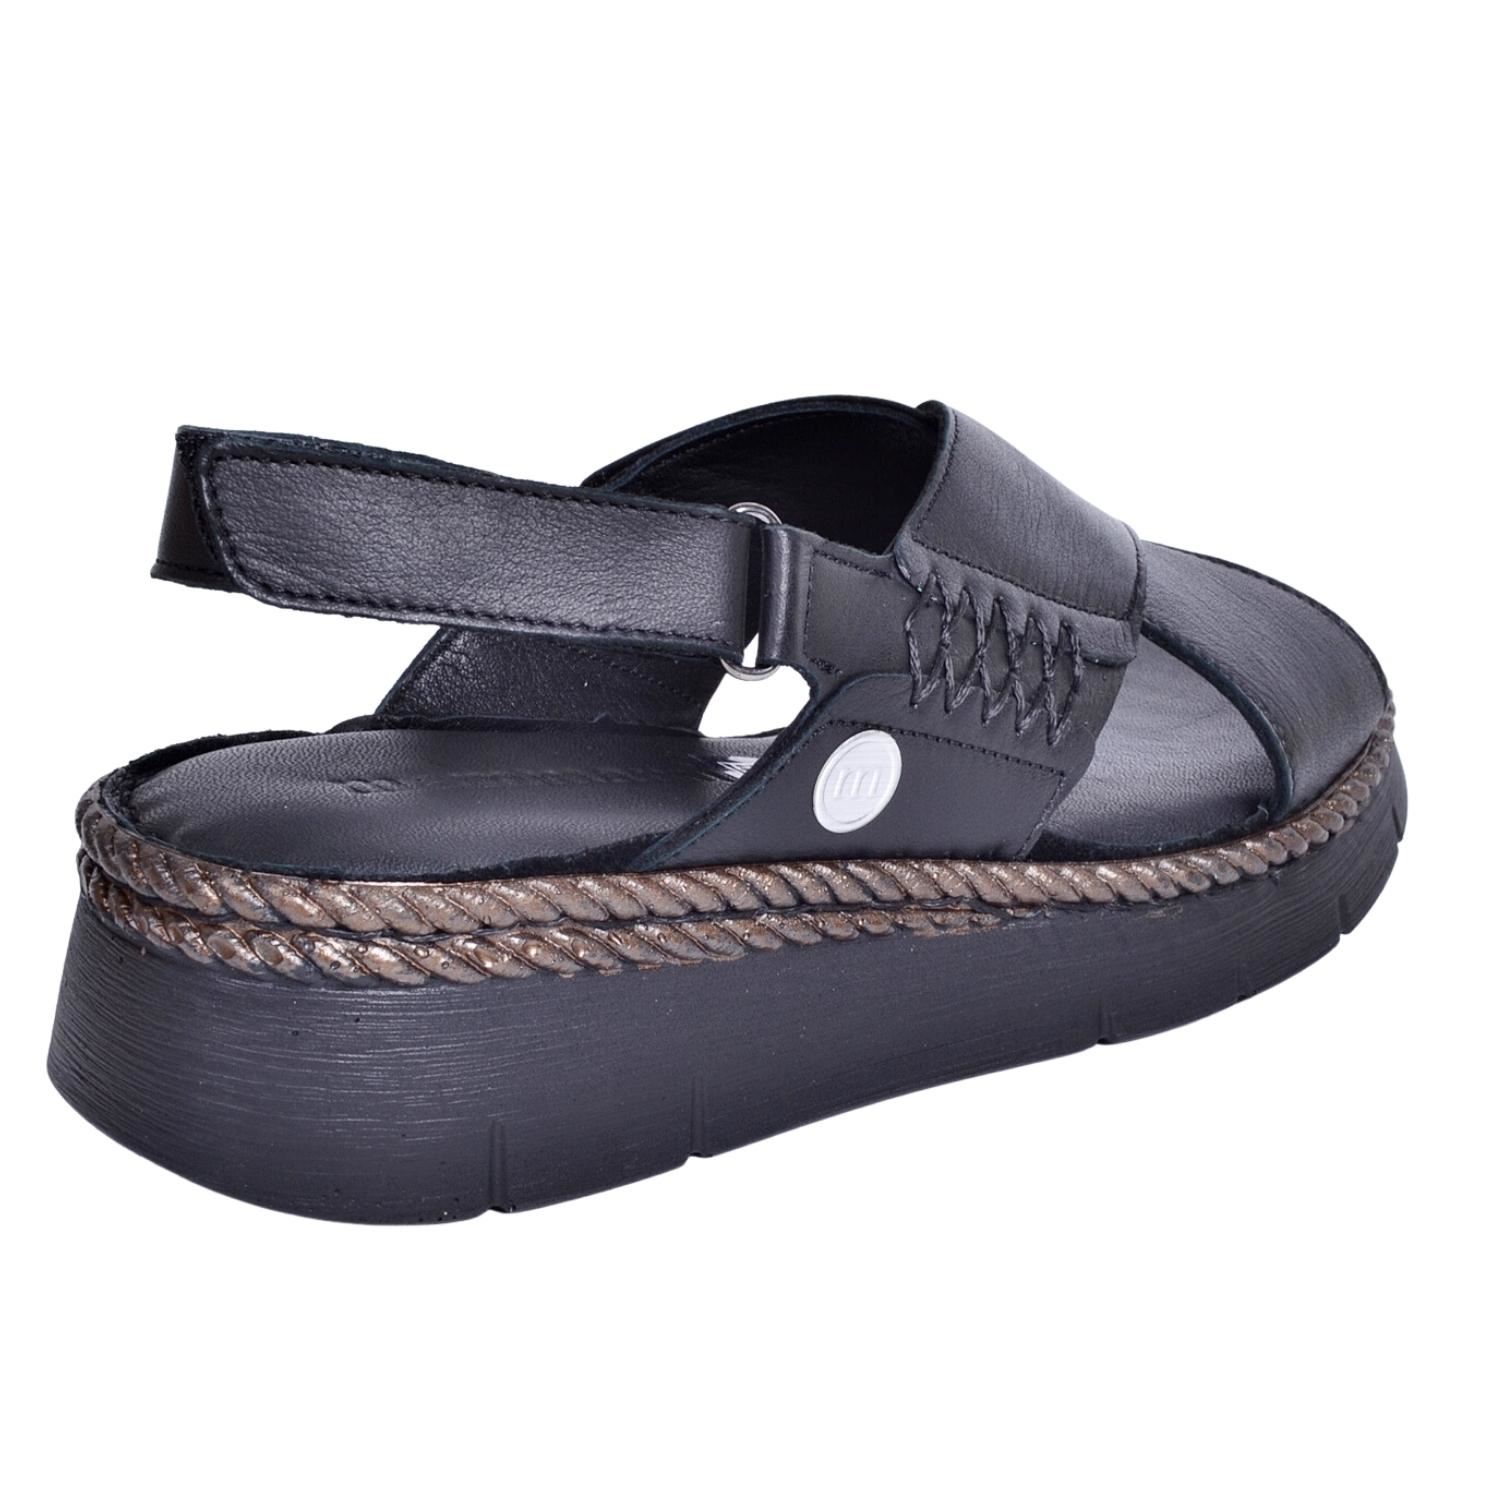 Mammamia D23YS-1200 Kadın Siyah Deri Sandalet